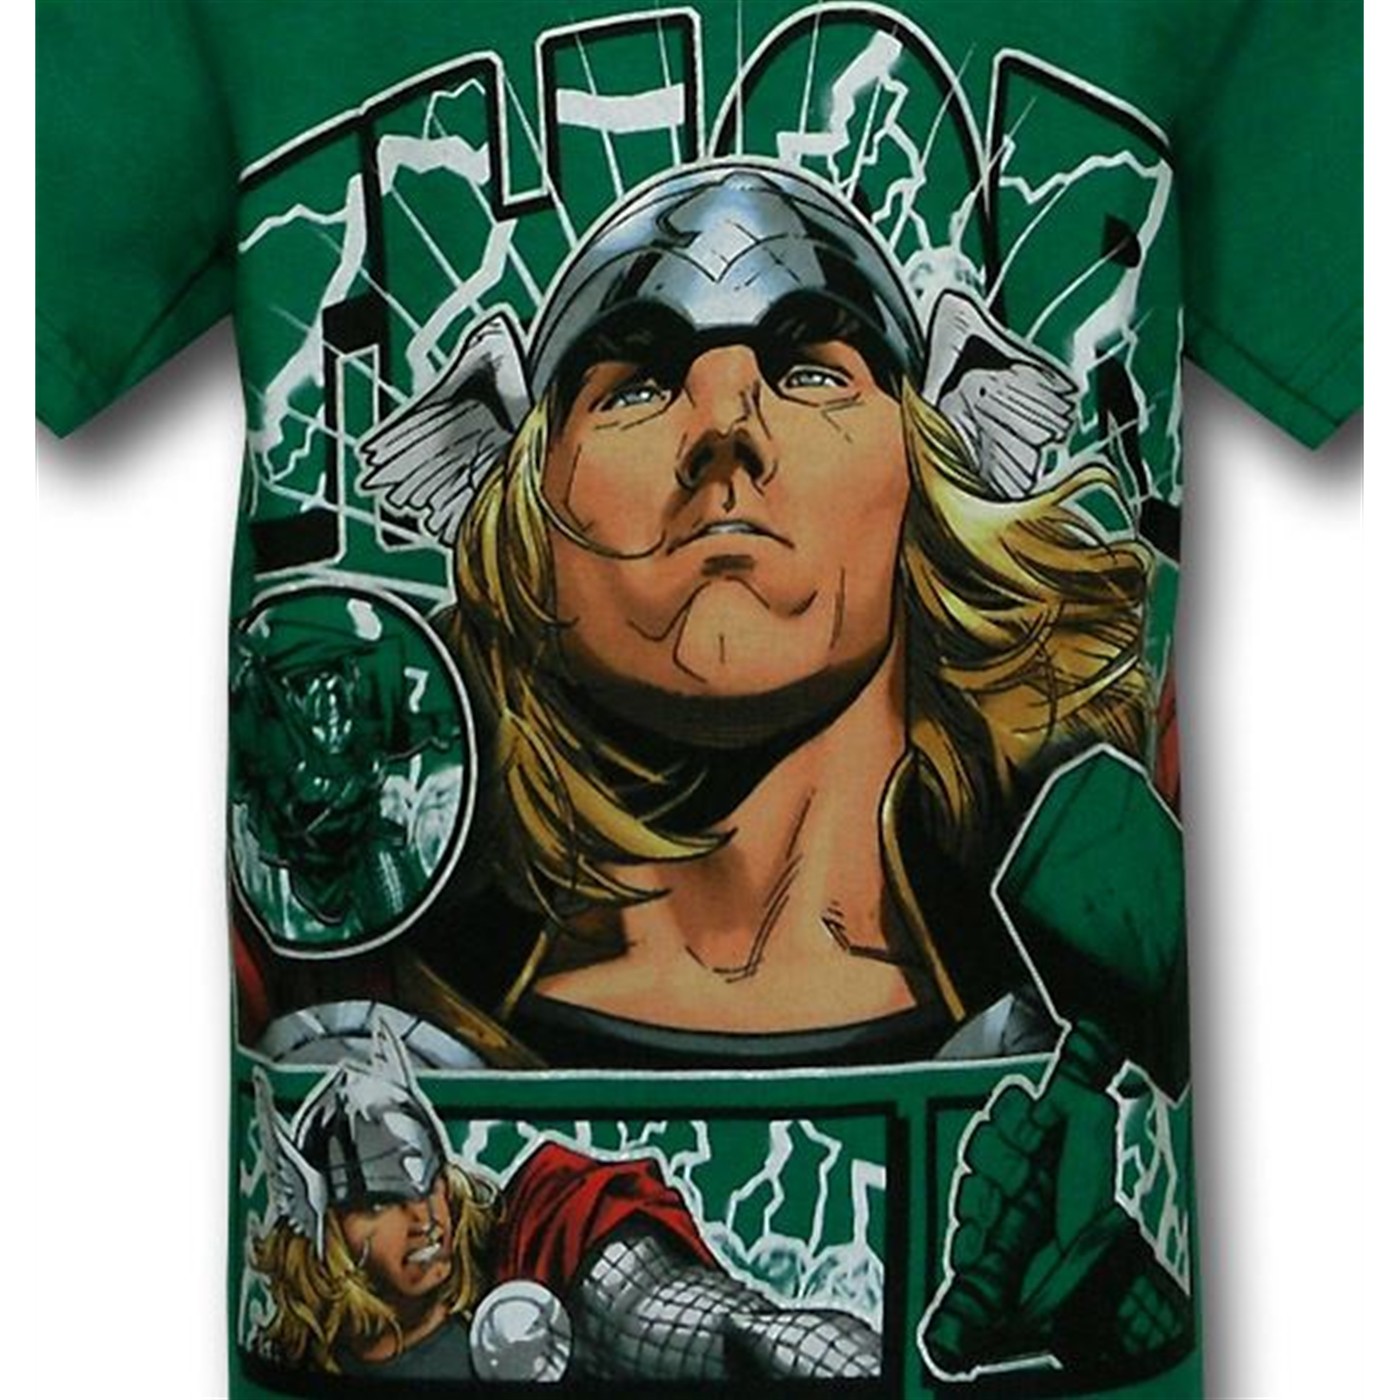 Thor Juvenile Green Hero T-Shirt